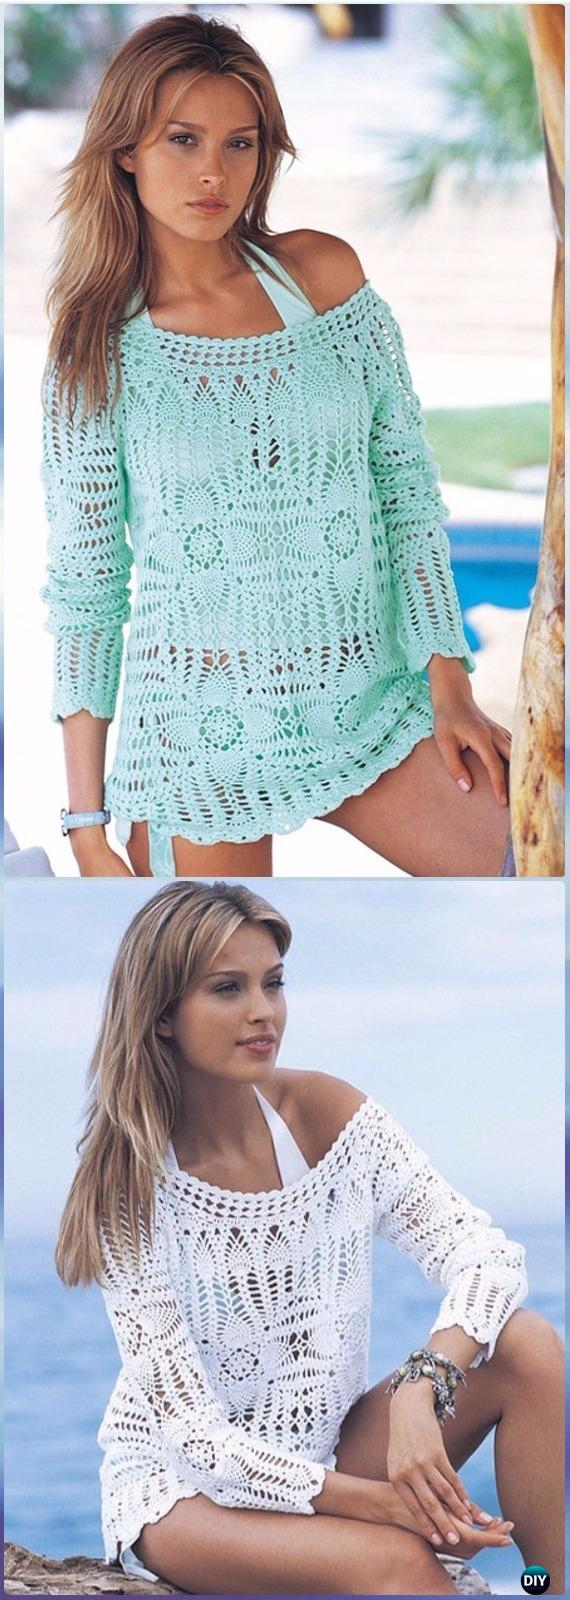 Crochet Beach Cover Up Pattern Crochet Beach Cover Up Free Patterns Women Summer Top